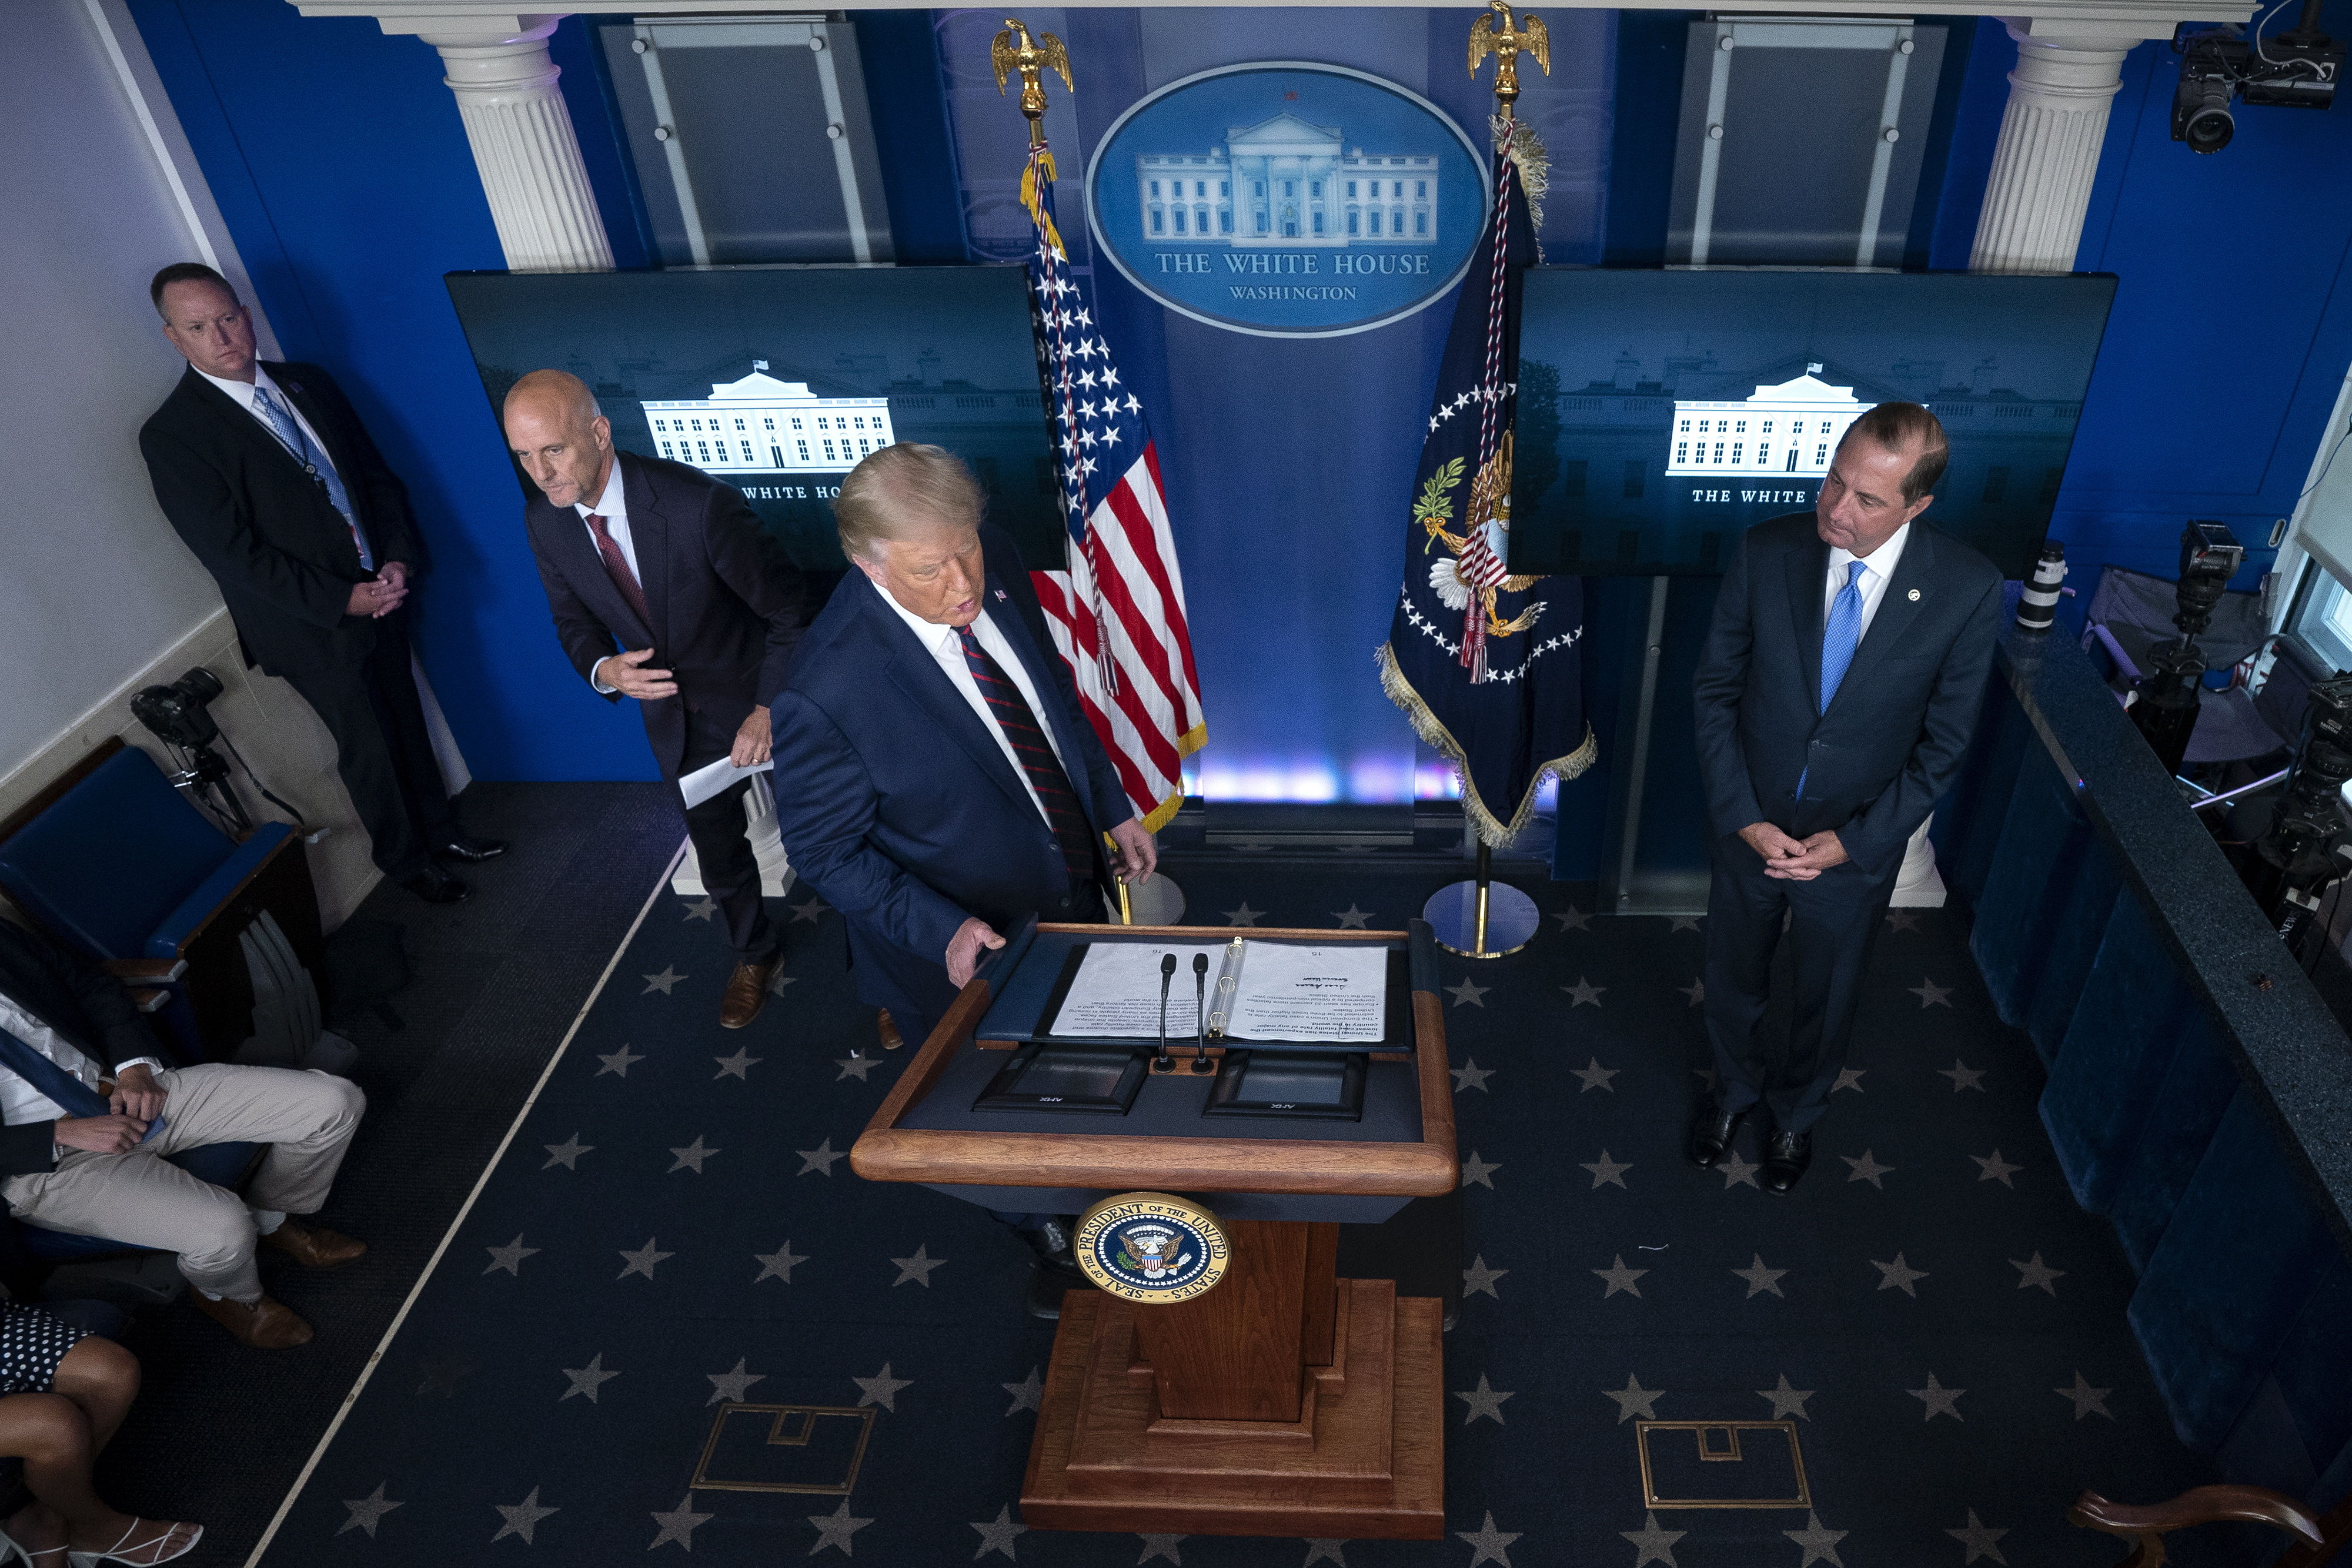 Donald J. Trump, presidente de Estados Unidos, se dirige al podio para hablar con los medios. (Foto Prensa Libre: EFE)